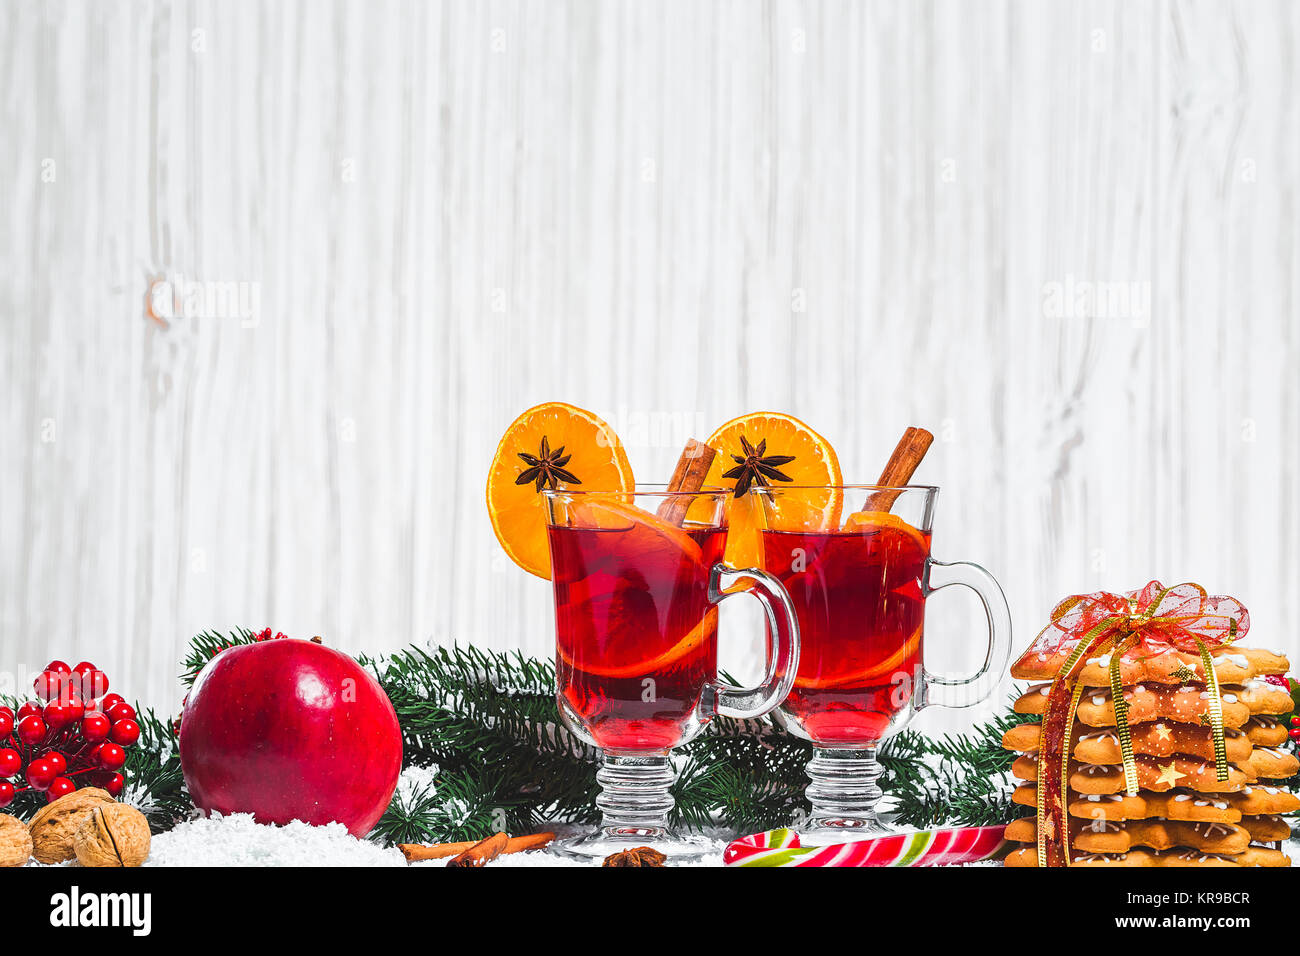 Weihnachten Glas Rotwein Glühwein auf Tabelle mit Zimt Reisig, Zweige von Weihnachten, Baum, Schnee, Lebkuchen, Kegel, Süßigkeiten, Neues Jahr Dekorationen auf Stockfoto